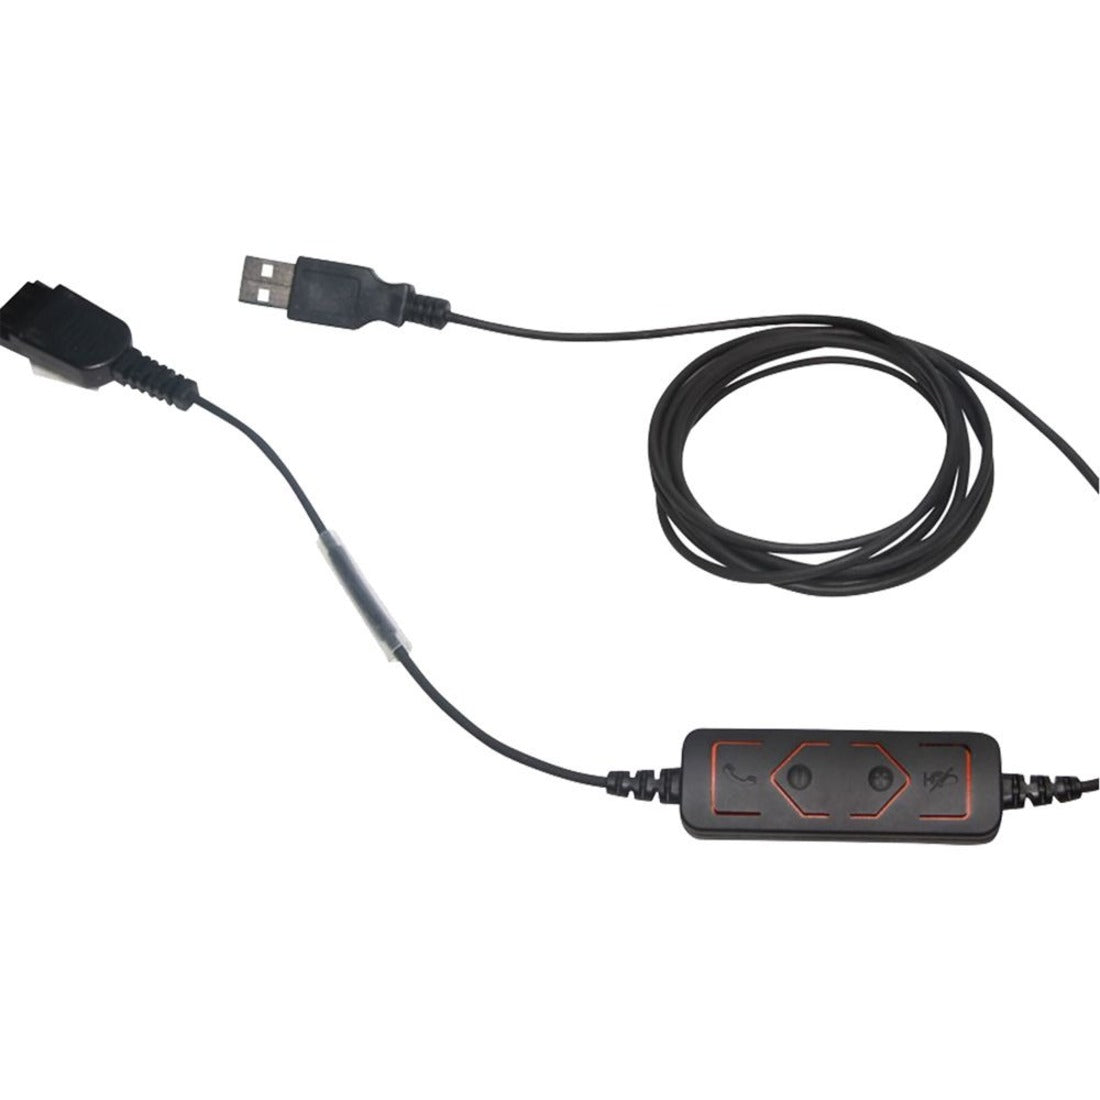 DataLocker AT1000HS-G AlphaTalk Compatibile con TAA Cuffia USB Cuffia stereo binaurale sovraurale con archetto regolabile e cancellazione del rumore